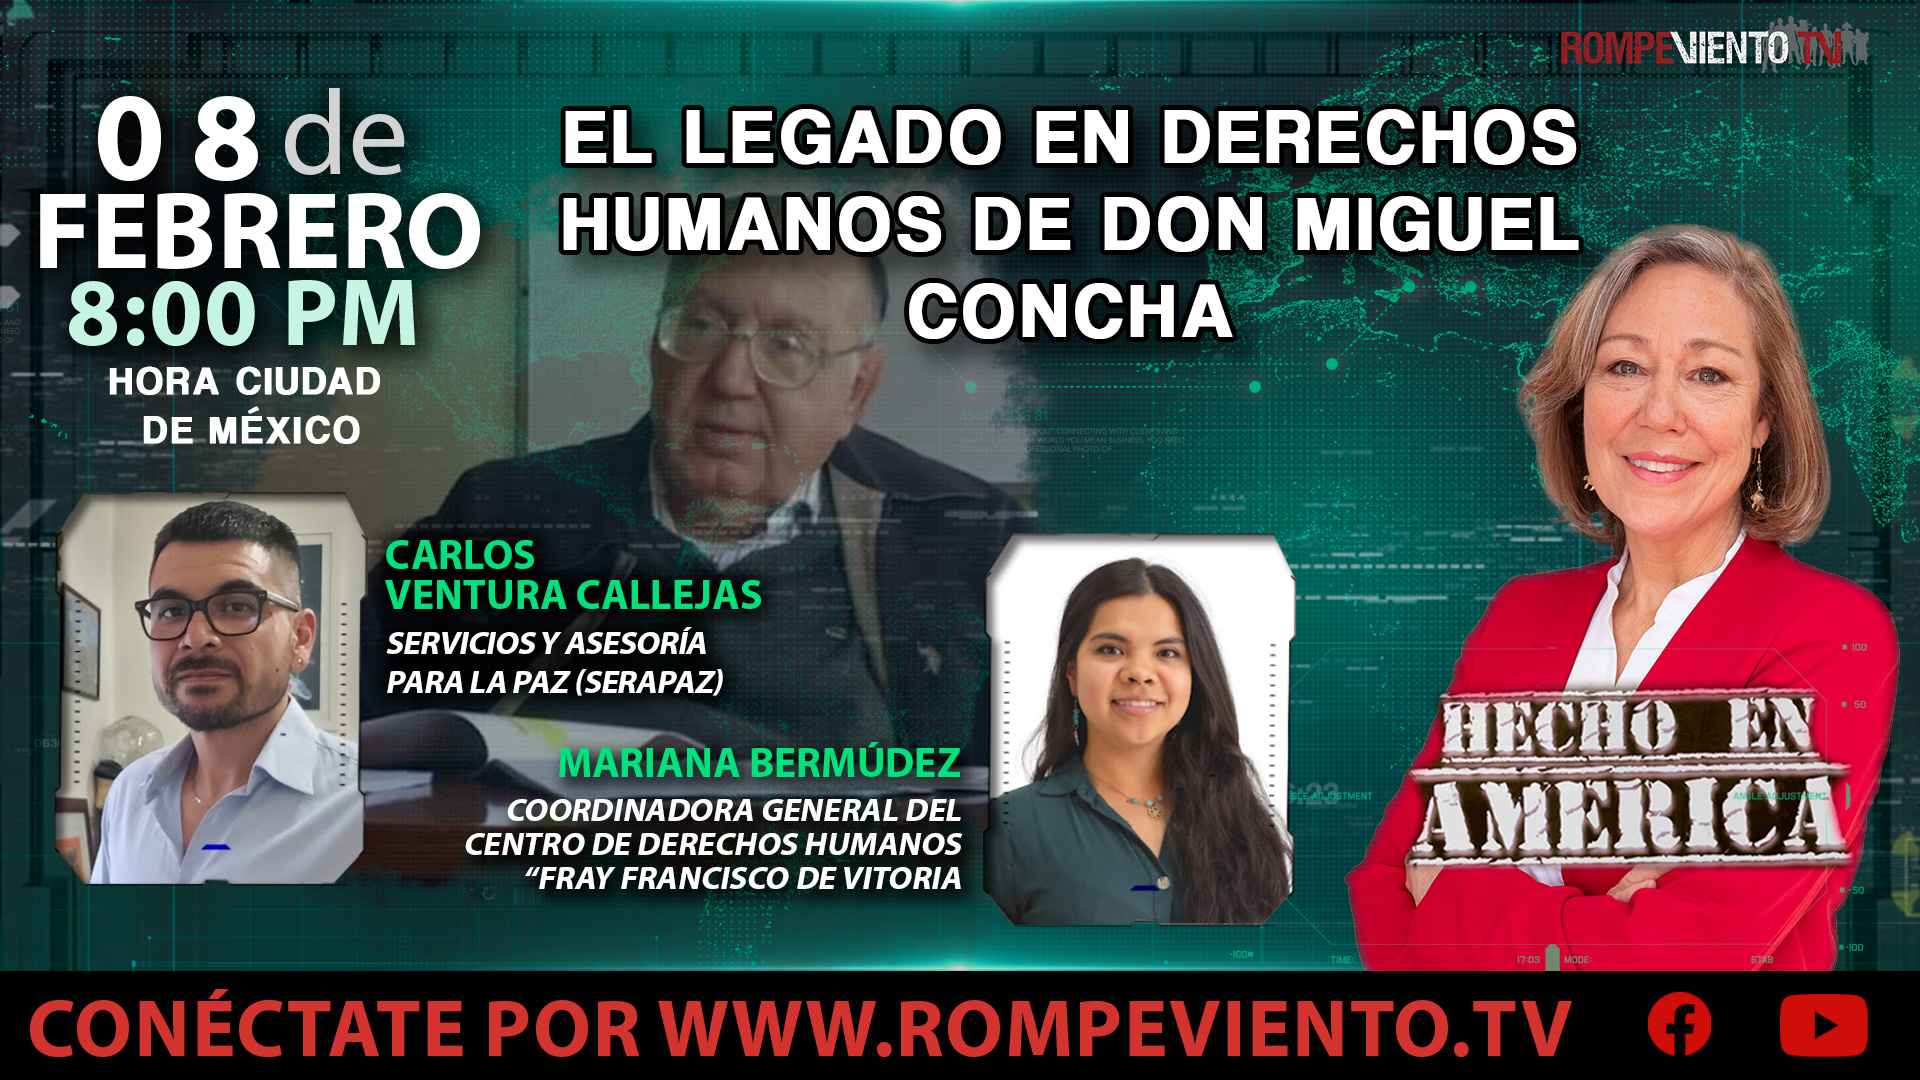 El legado en Derechos Humanos de Don Miguel Concha - Hecho en América